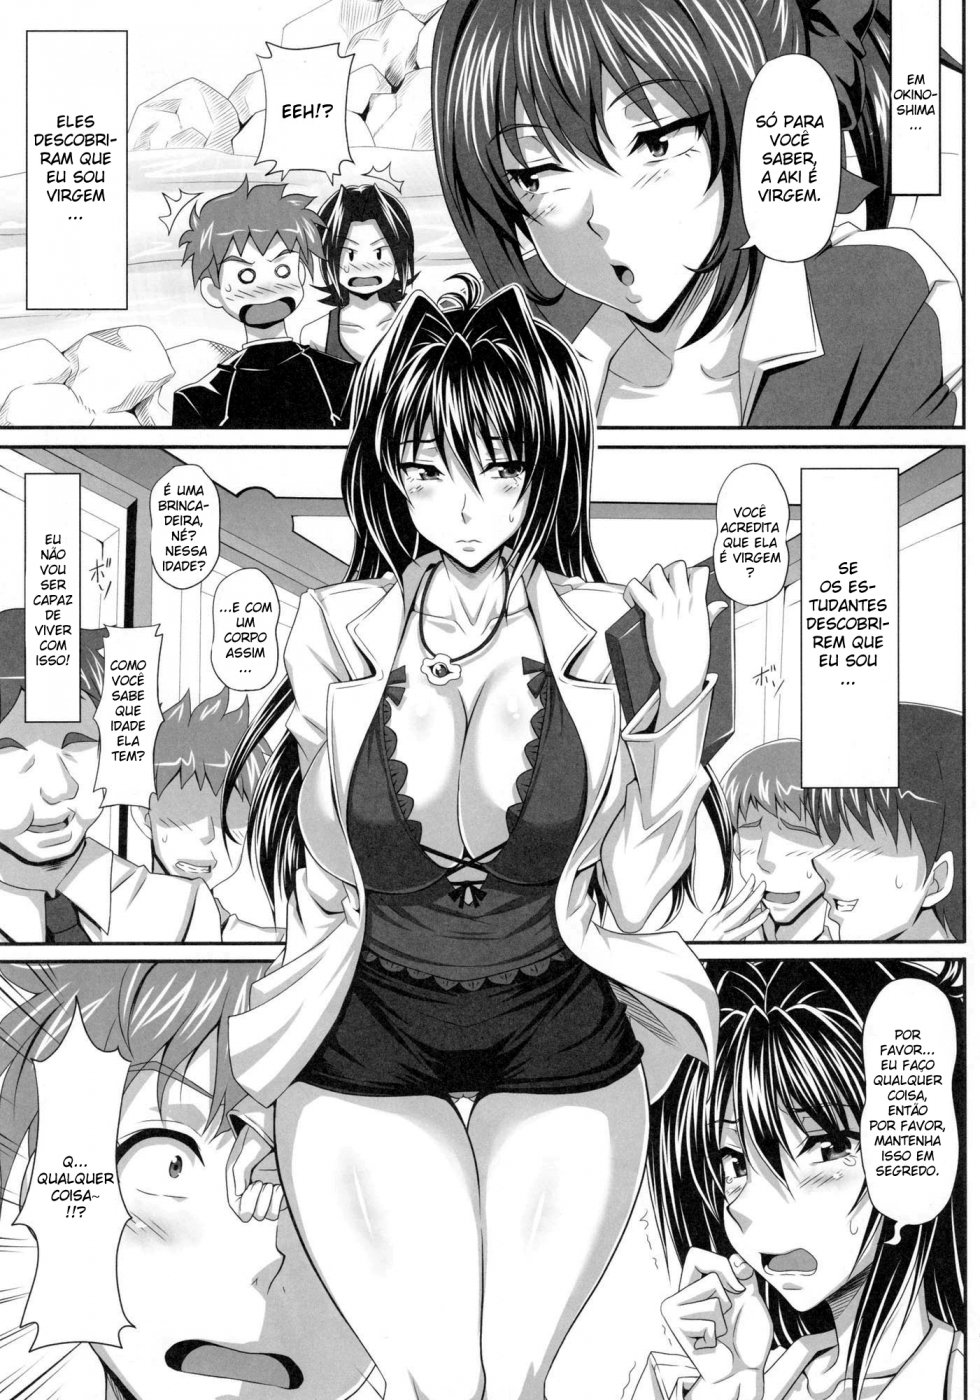 Sexo Hentai - Uma professora apaixonada por rola!